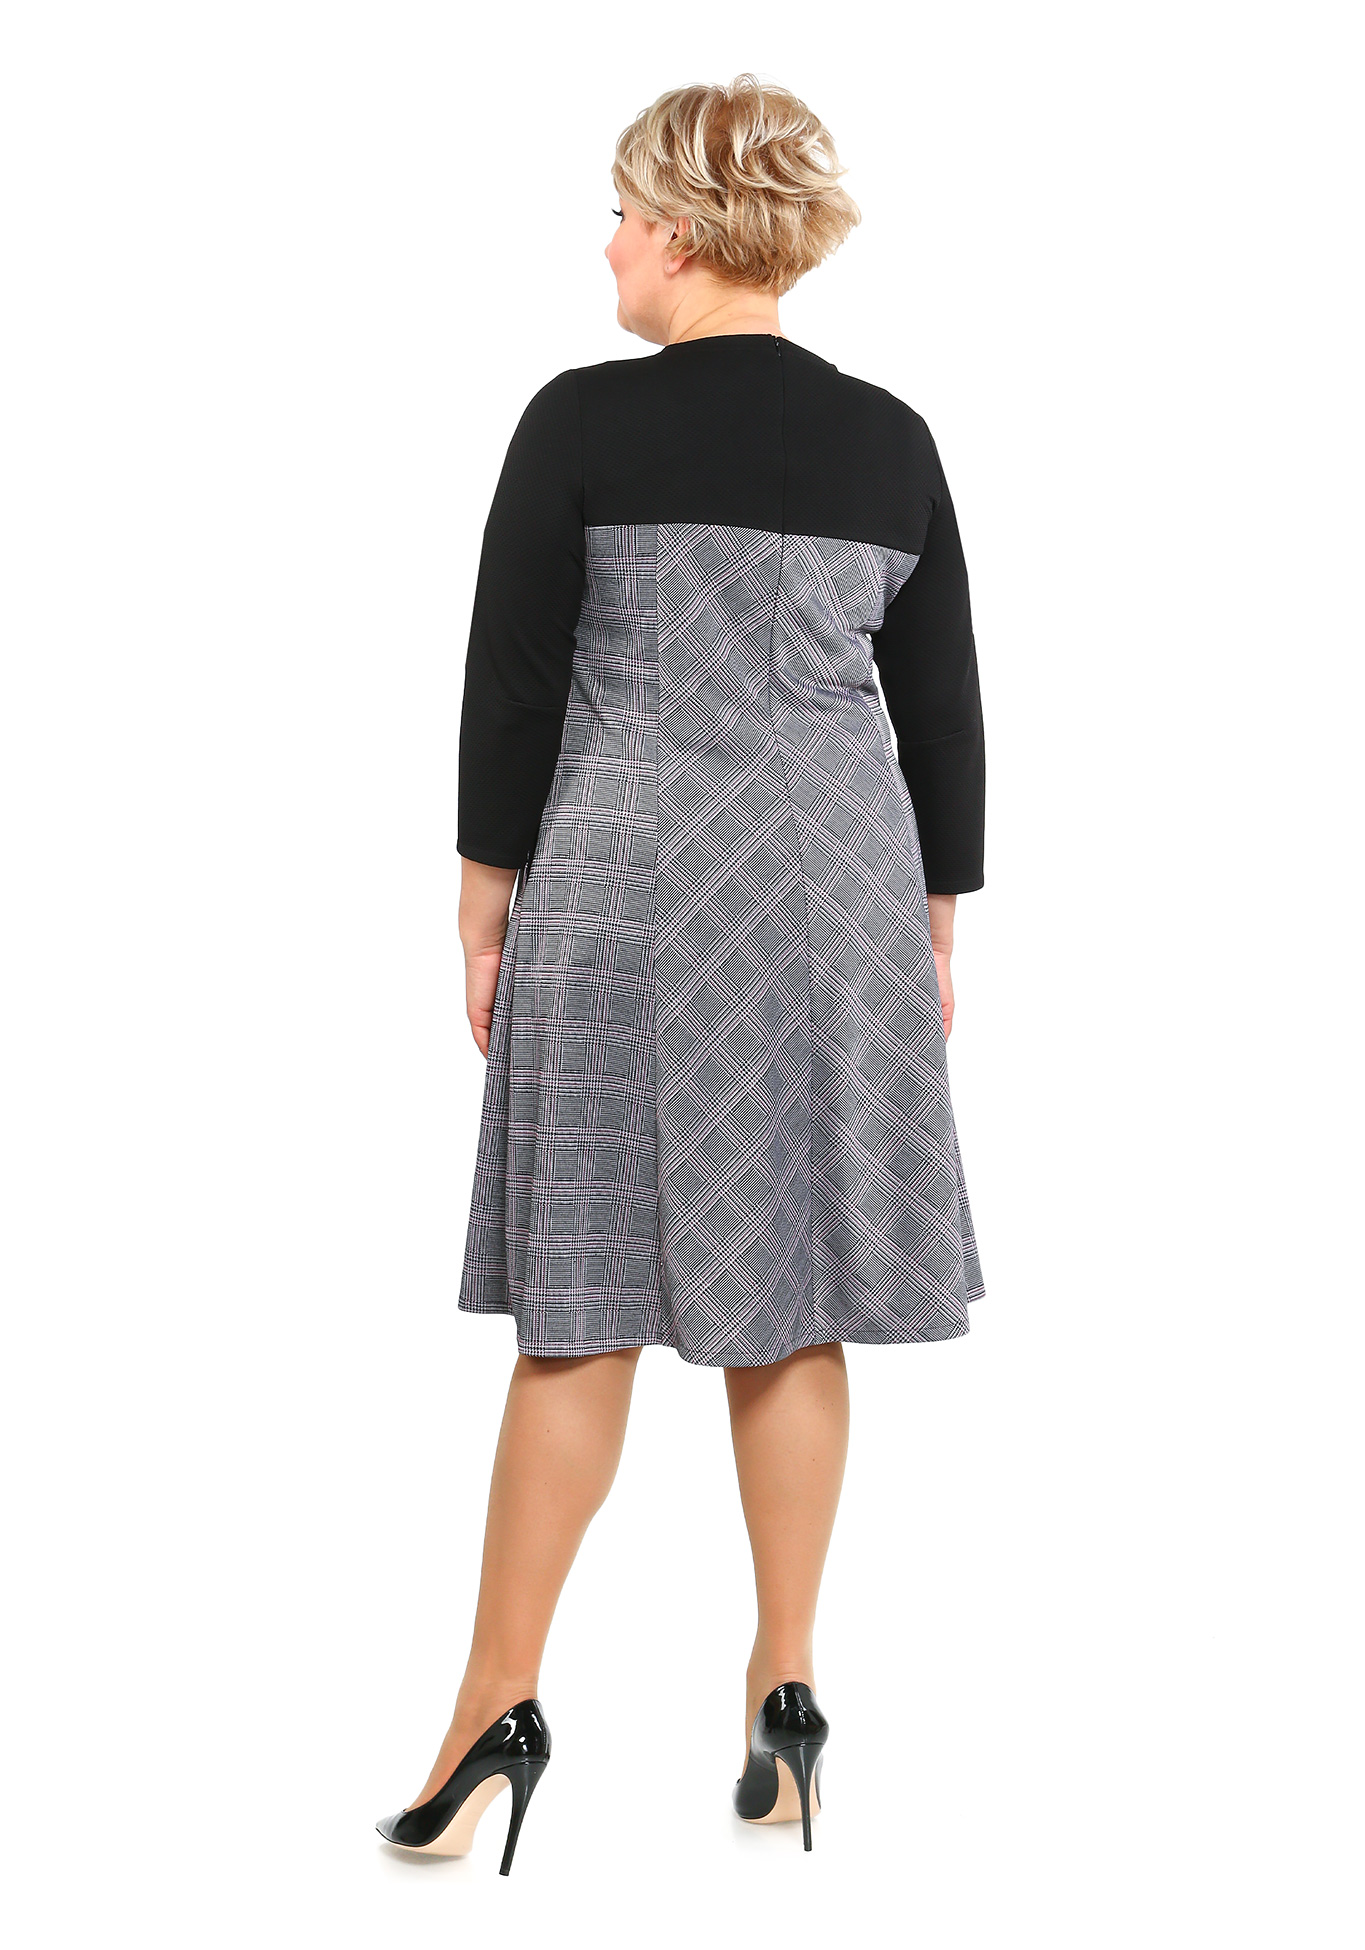 Платье Нежность Прикосновения Sarah Morenberg, размер 48, цвет черно-бордовый - фото 7